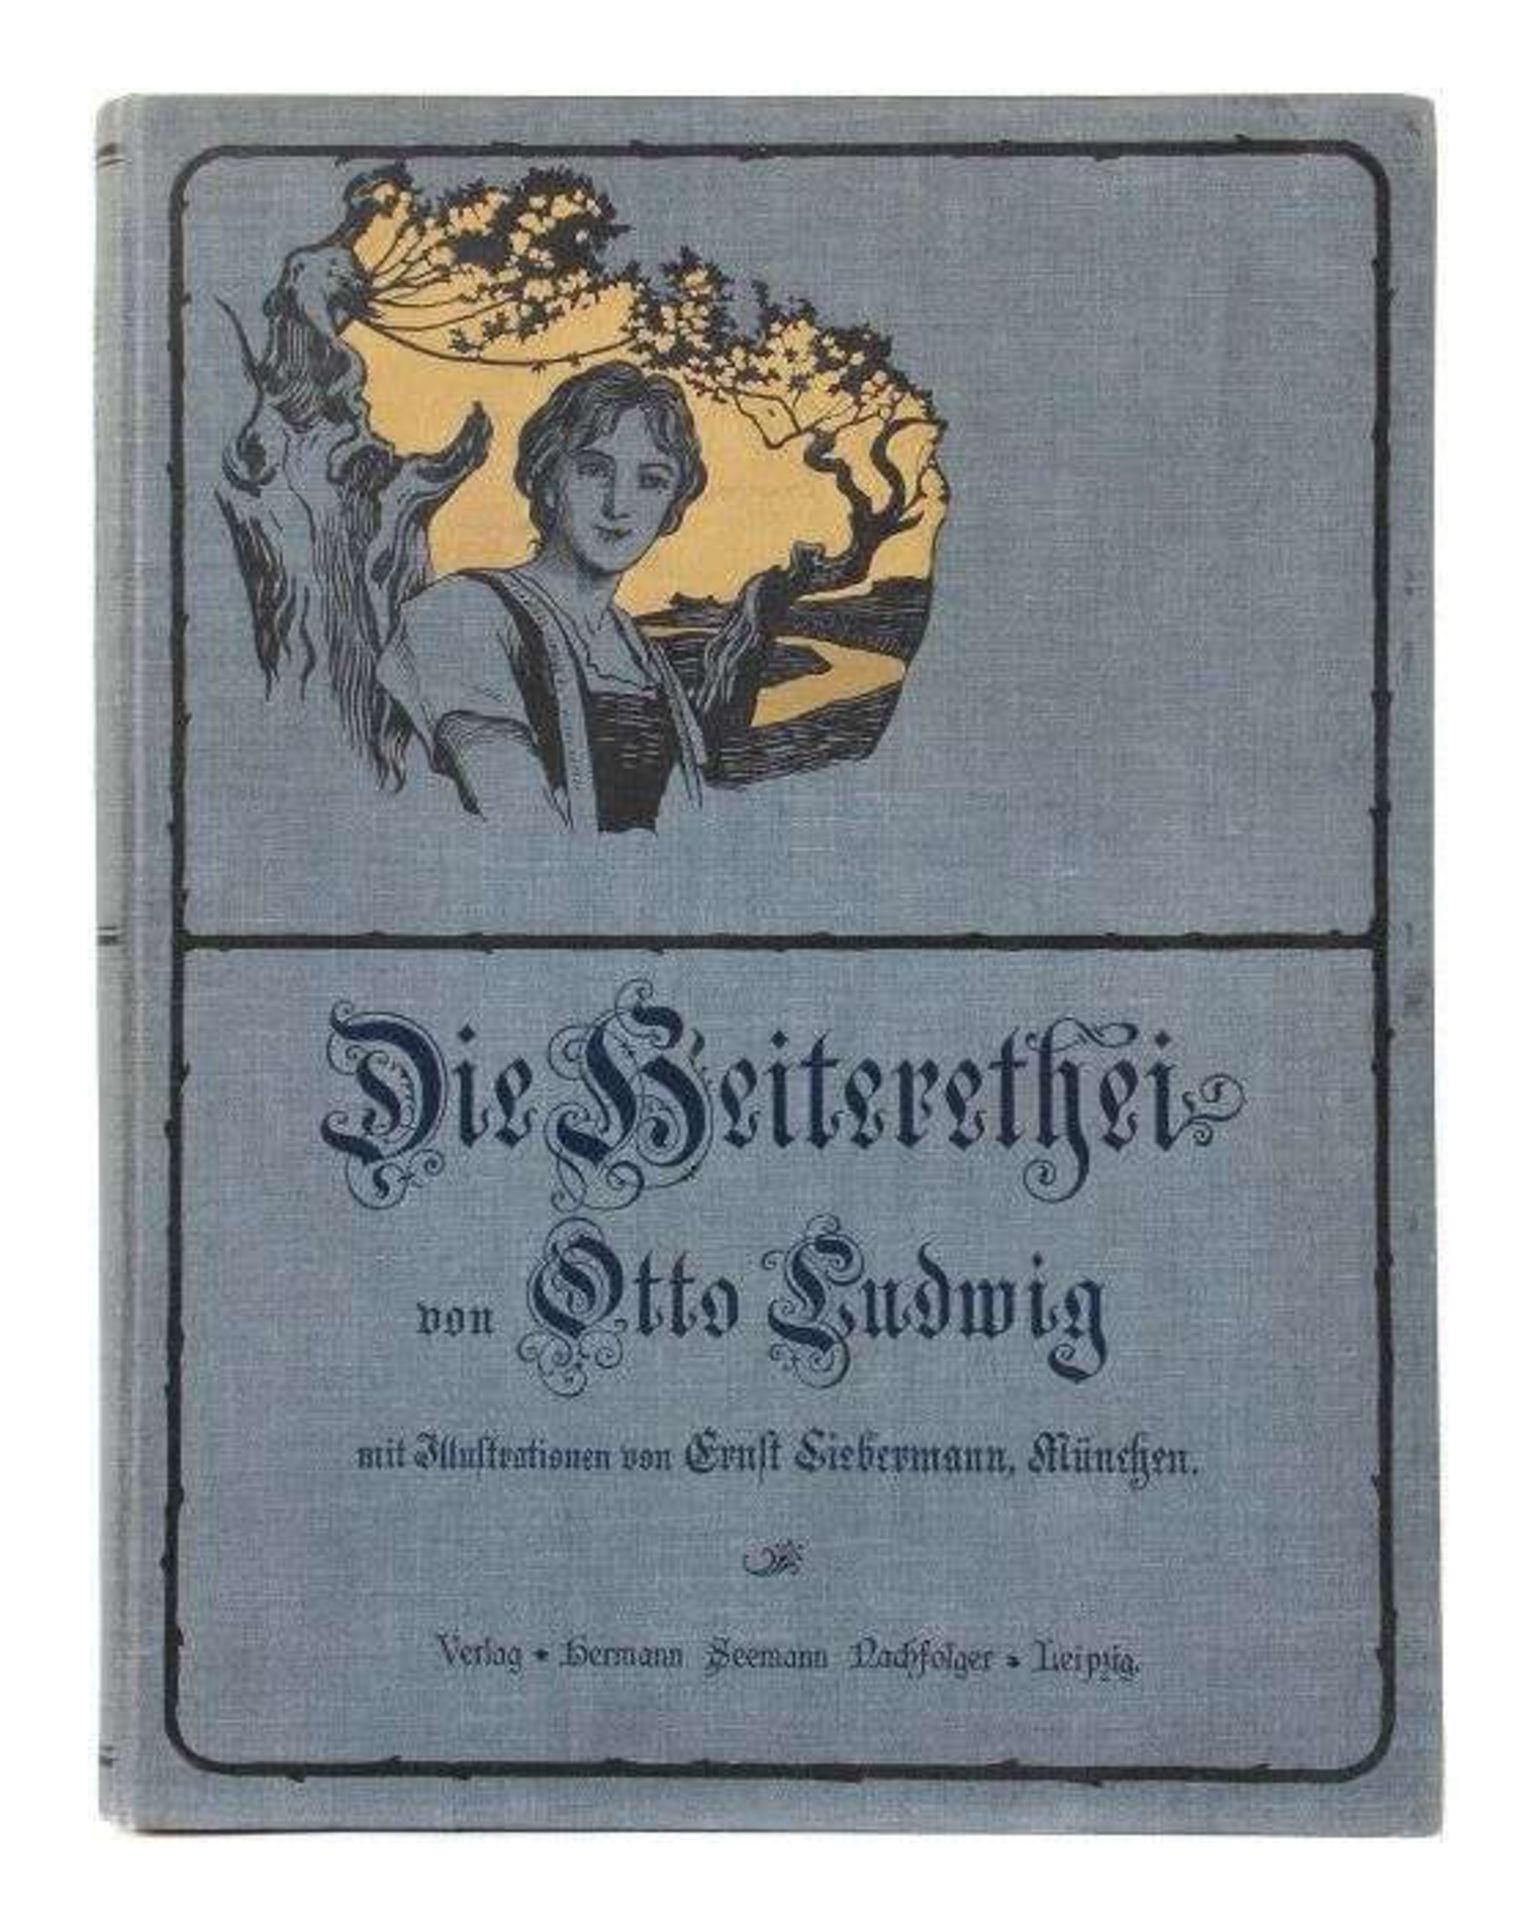 Ludwig, Otto Die Heiterethei, Erzählung aus dem Thüringer Volksleben, Leipzig, Seemann, 1900, 188 S.